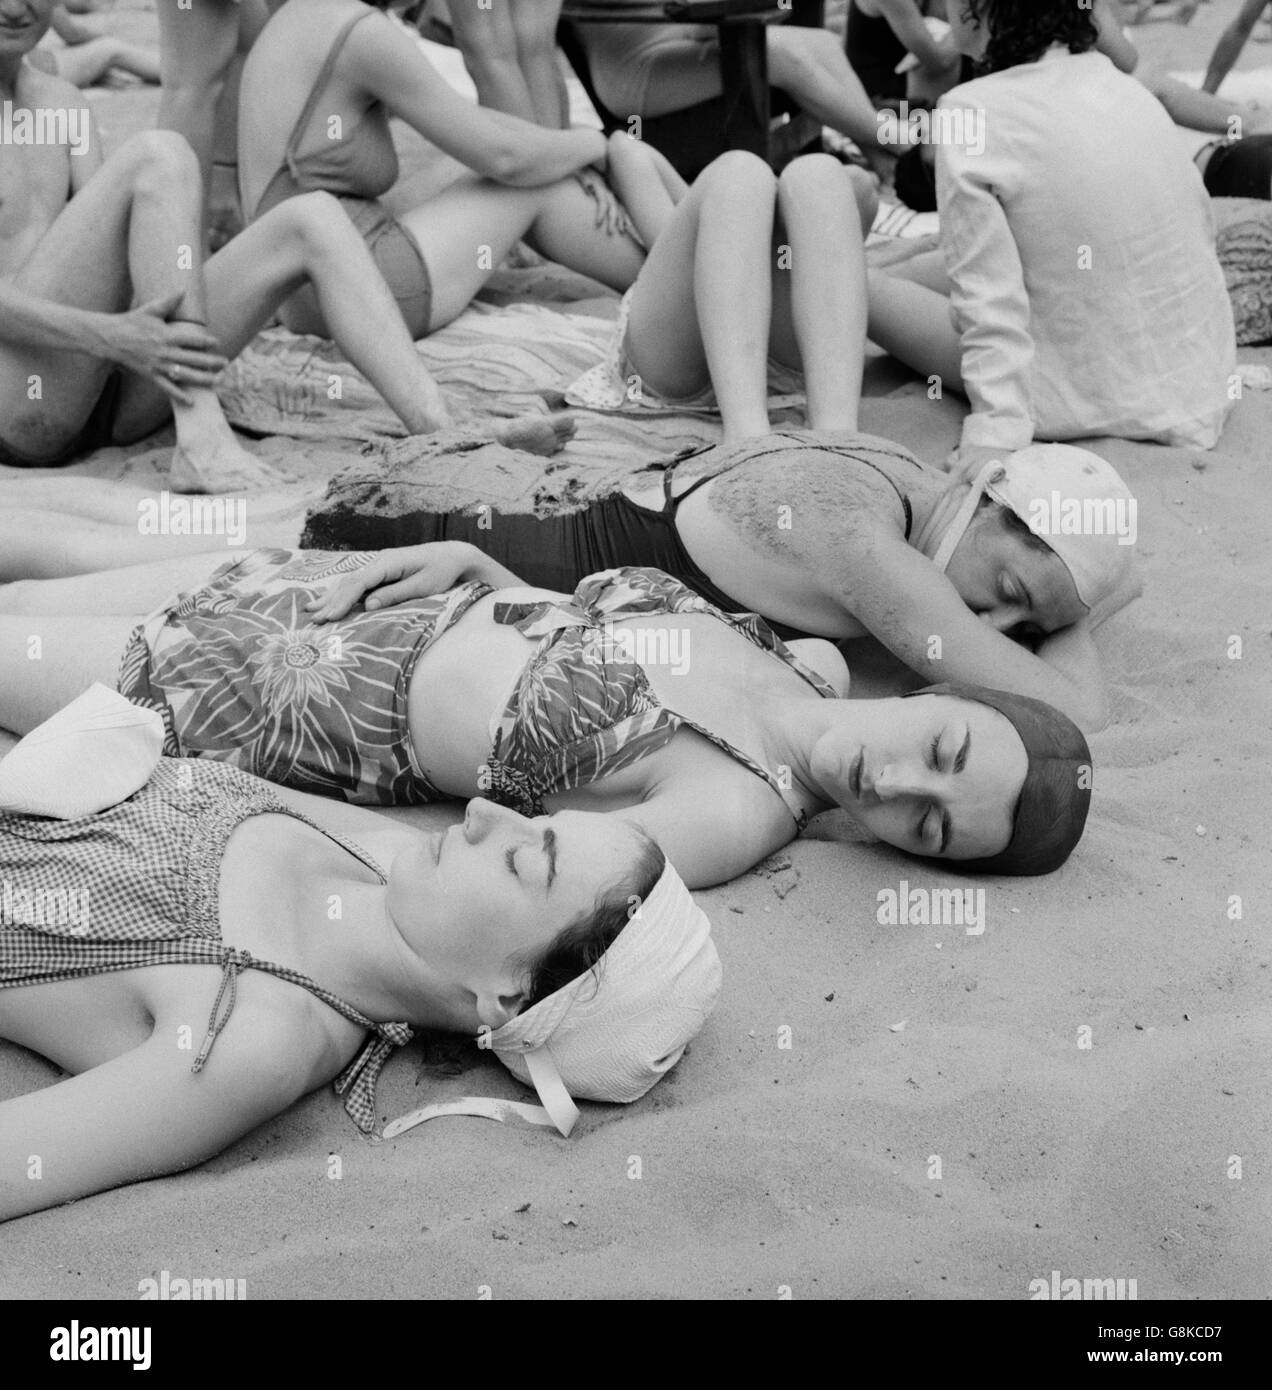 Sun bagnanti sulla spiaggia di sabbia al parco dei divertimenti di piscina, Glen Echo, Maryland, USA, Esther Bubley per ufficio di informazione di guerra, Luglio 1943 Foto Stock